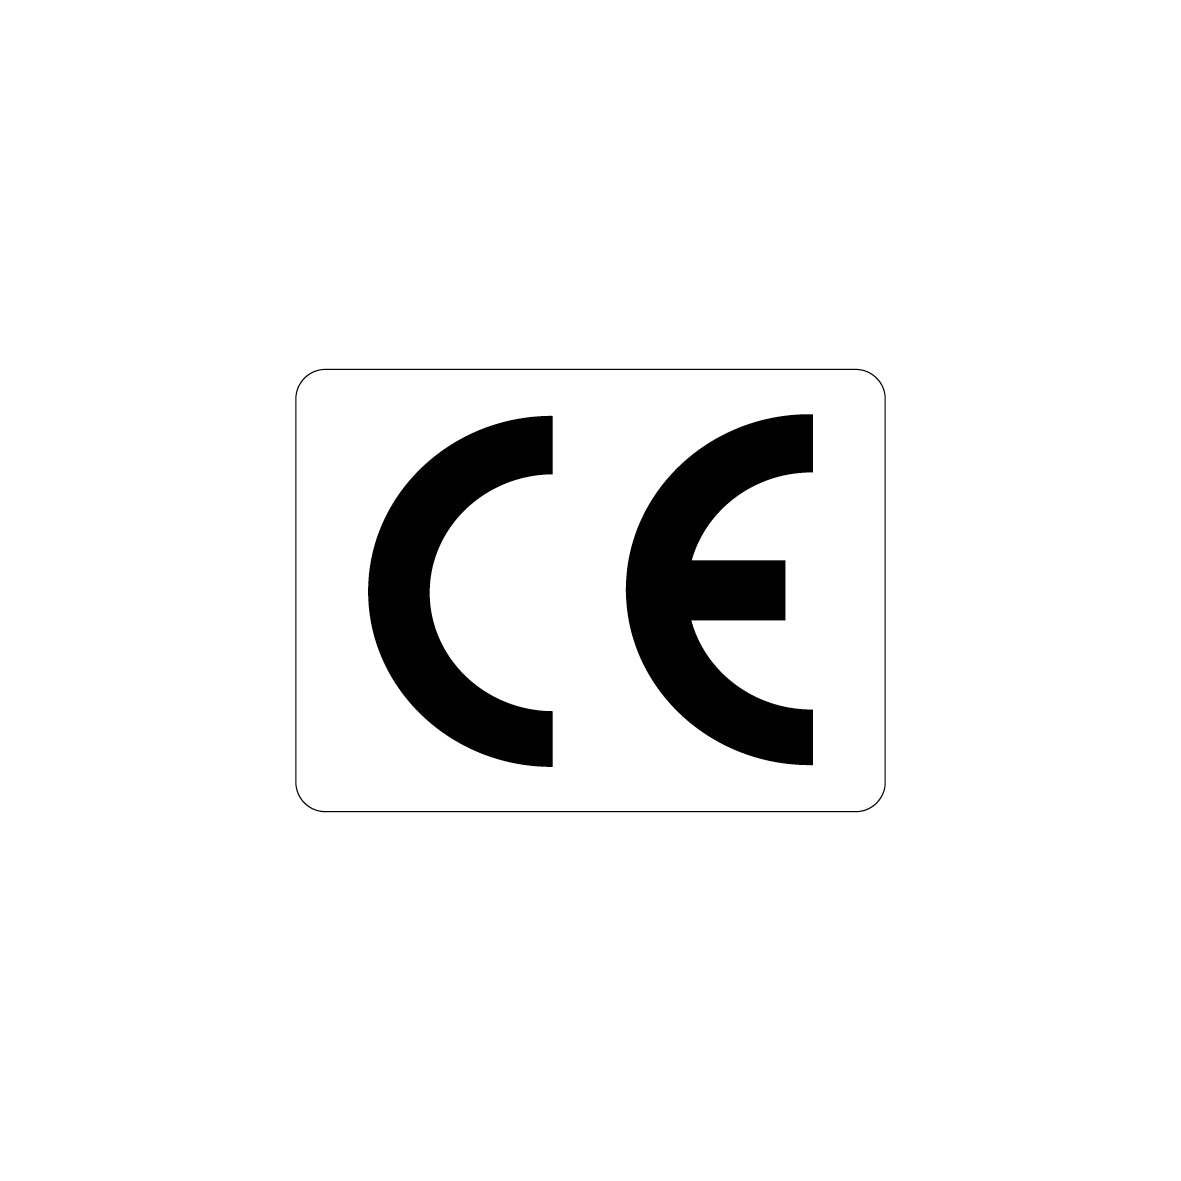 CE-Zeichen, 4.0061, 20 x 15 mm, Schrifthöhe 10 mm, FO-D, sehr stark haftend, auf Bogen = 25 Stk., weiss/schwarz, Einheit 100 Stk.